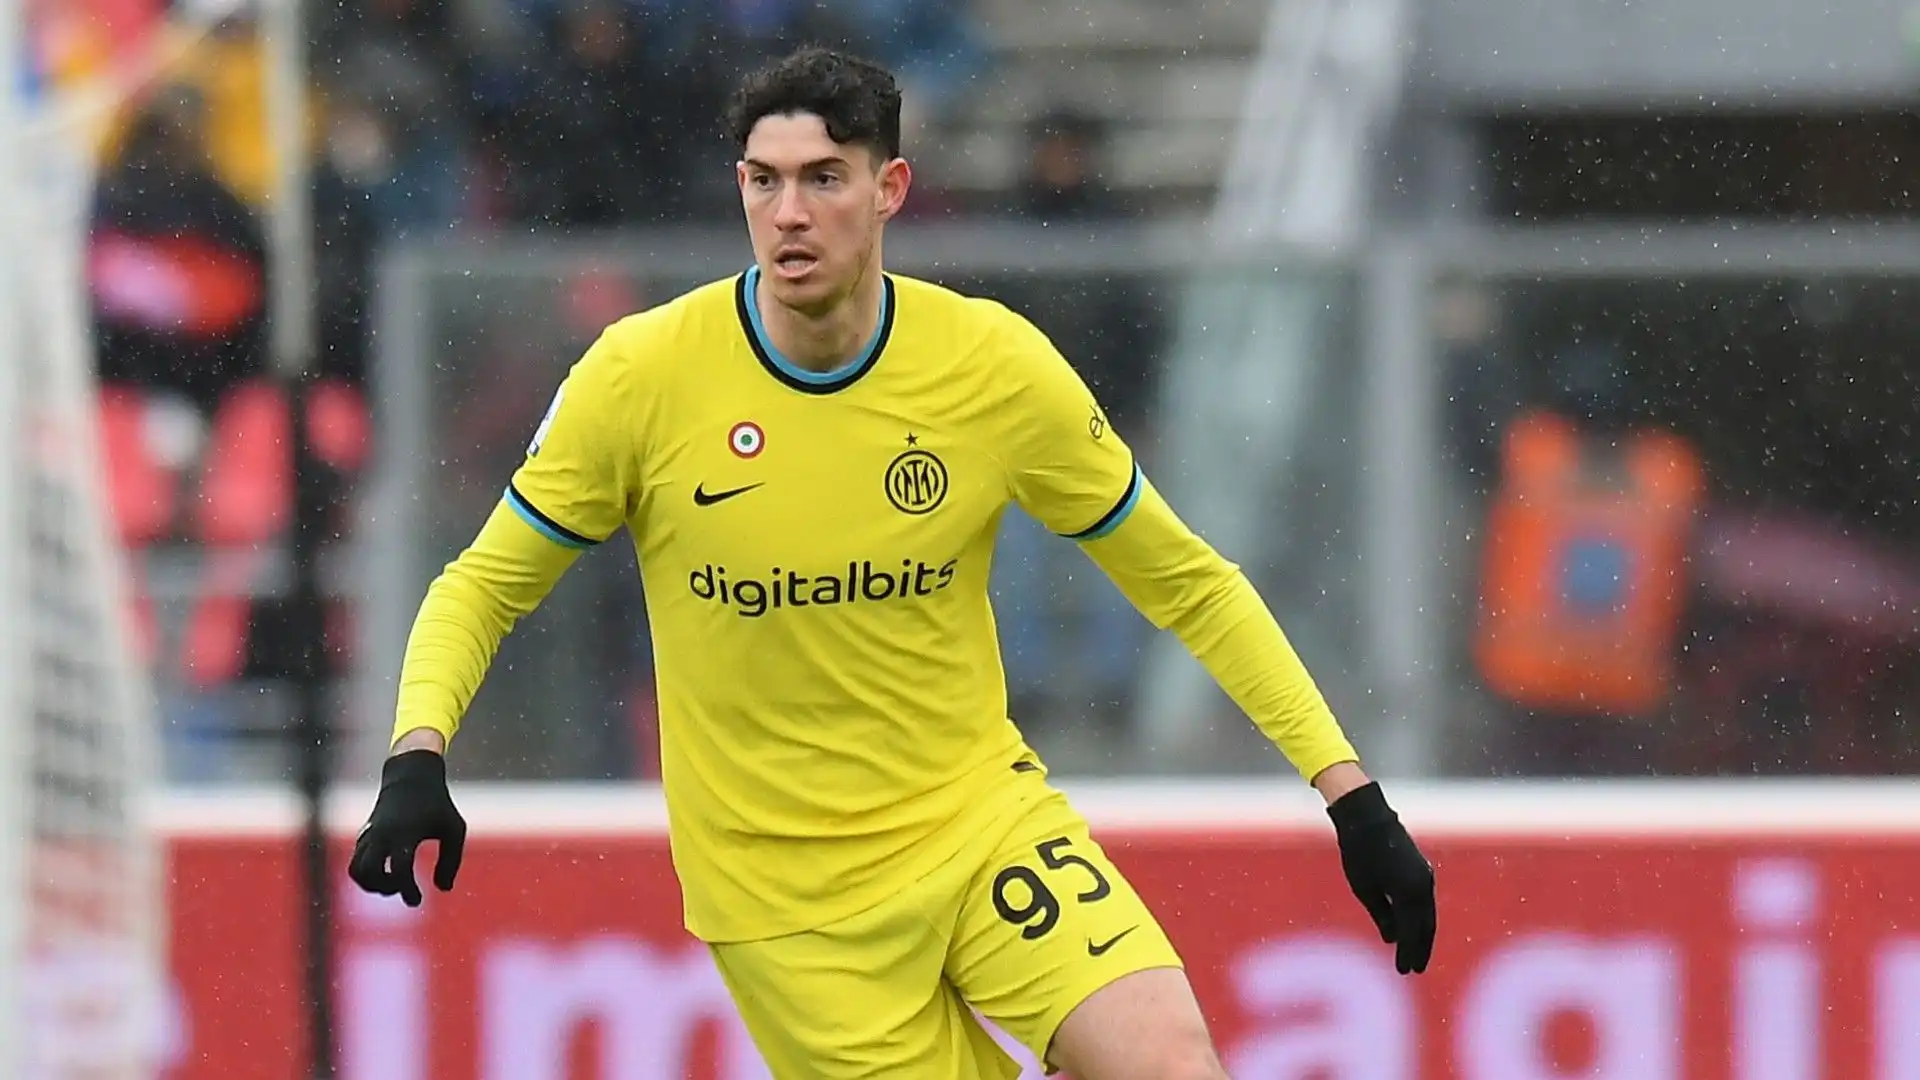 Dopo i prestiti ad Atalanta e Parma, nel 2019 Bastoni si è accasato definitivamente all'Inter